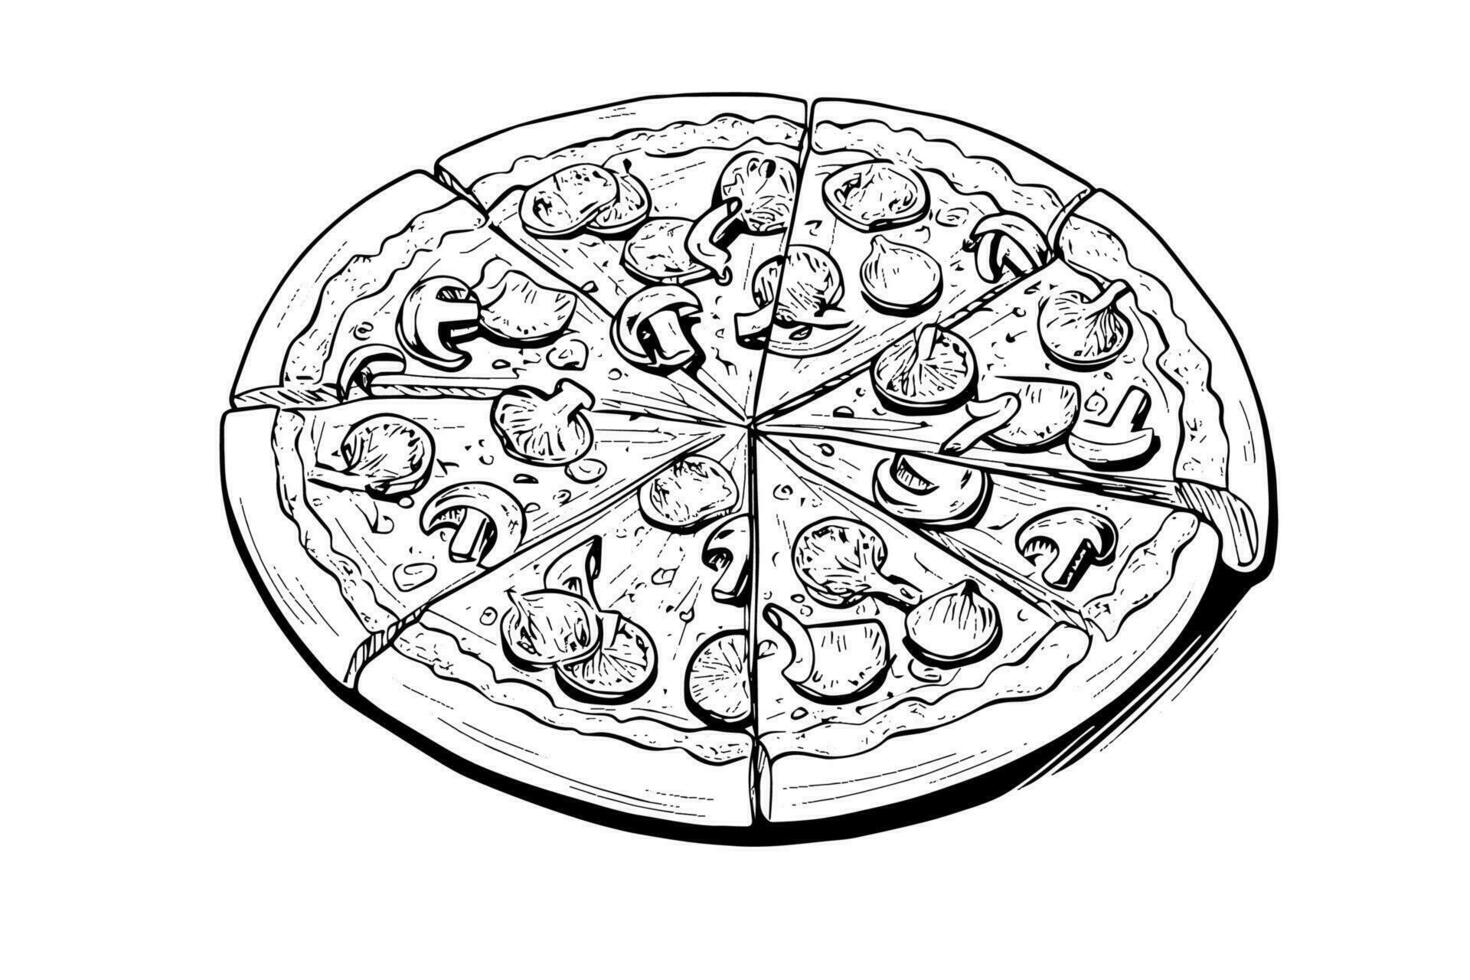 affettato Pizza schizzo mano disegnato incisione stile vettore illustrazione.